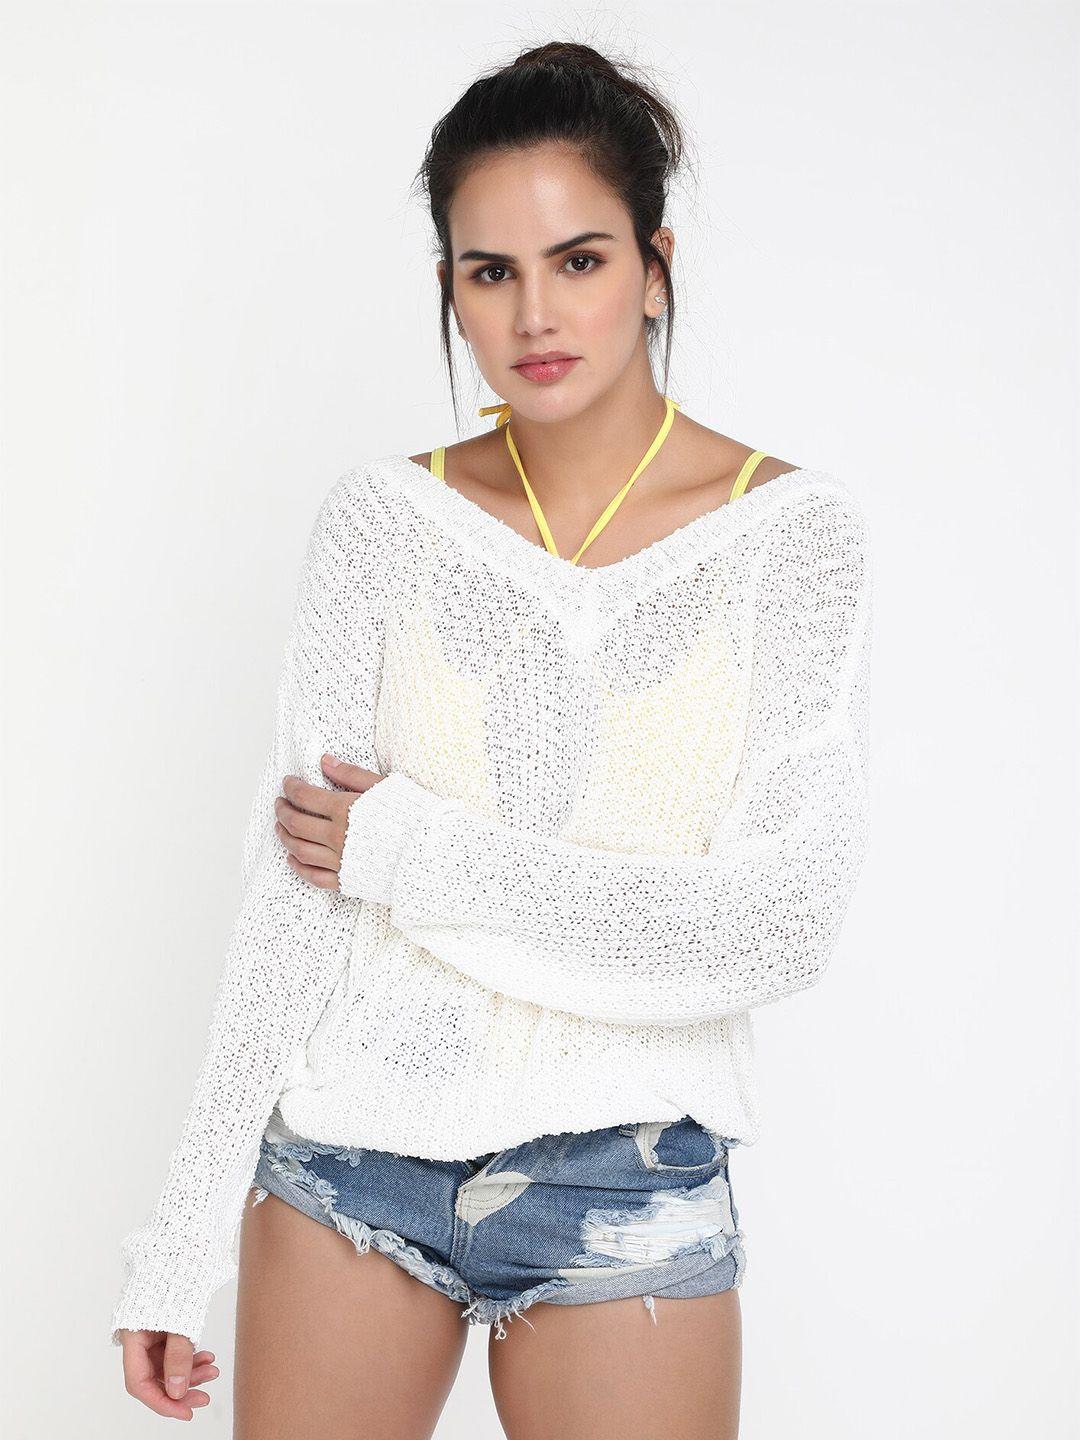 lulu-&-sky-open-knit-pullover-sweater